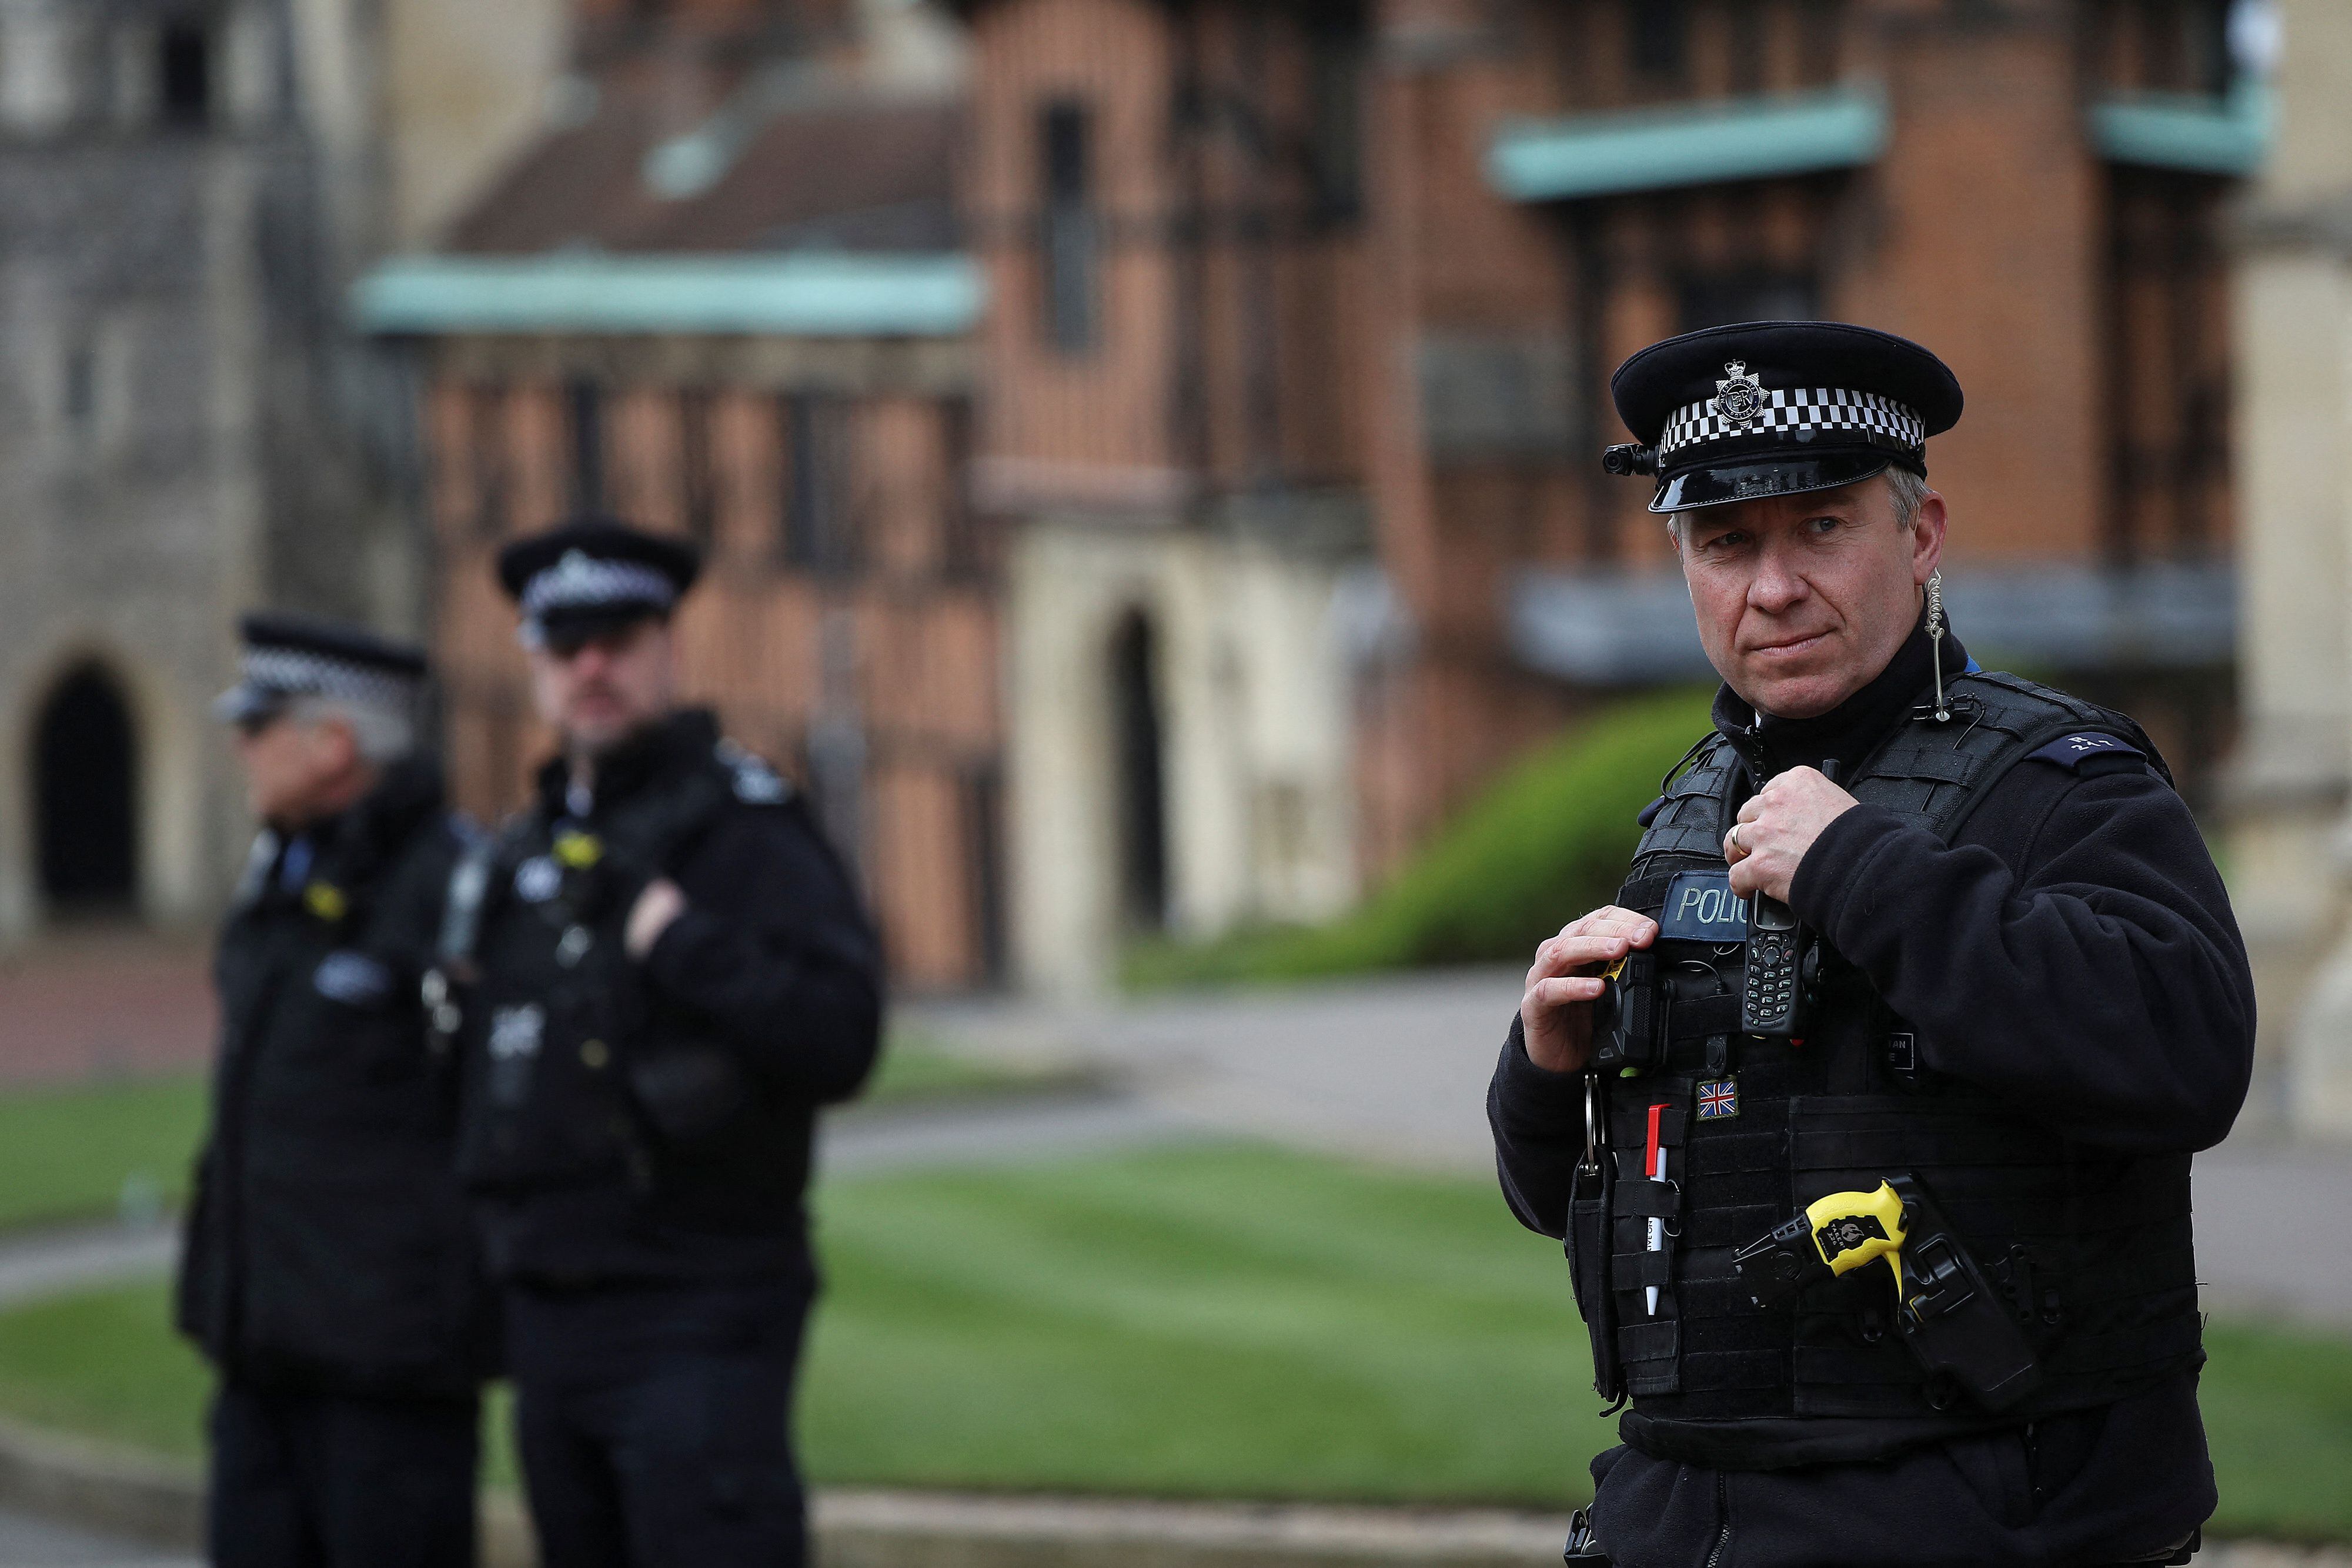 FOTO DE ARCHIVO. Oficilaes de Policía montan guardia en el Castillo de Windsor. Foto tomada el 1 de abril del 2018. REUTERS/Simon Dawson